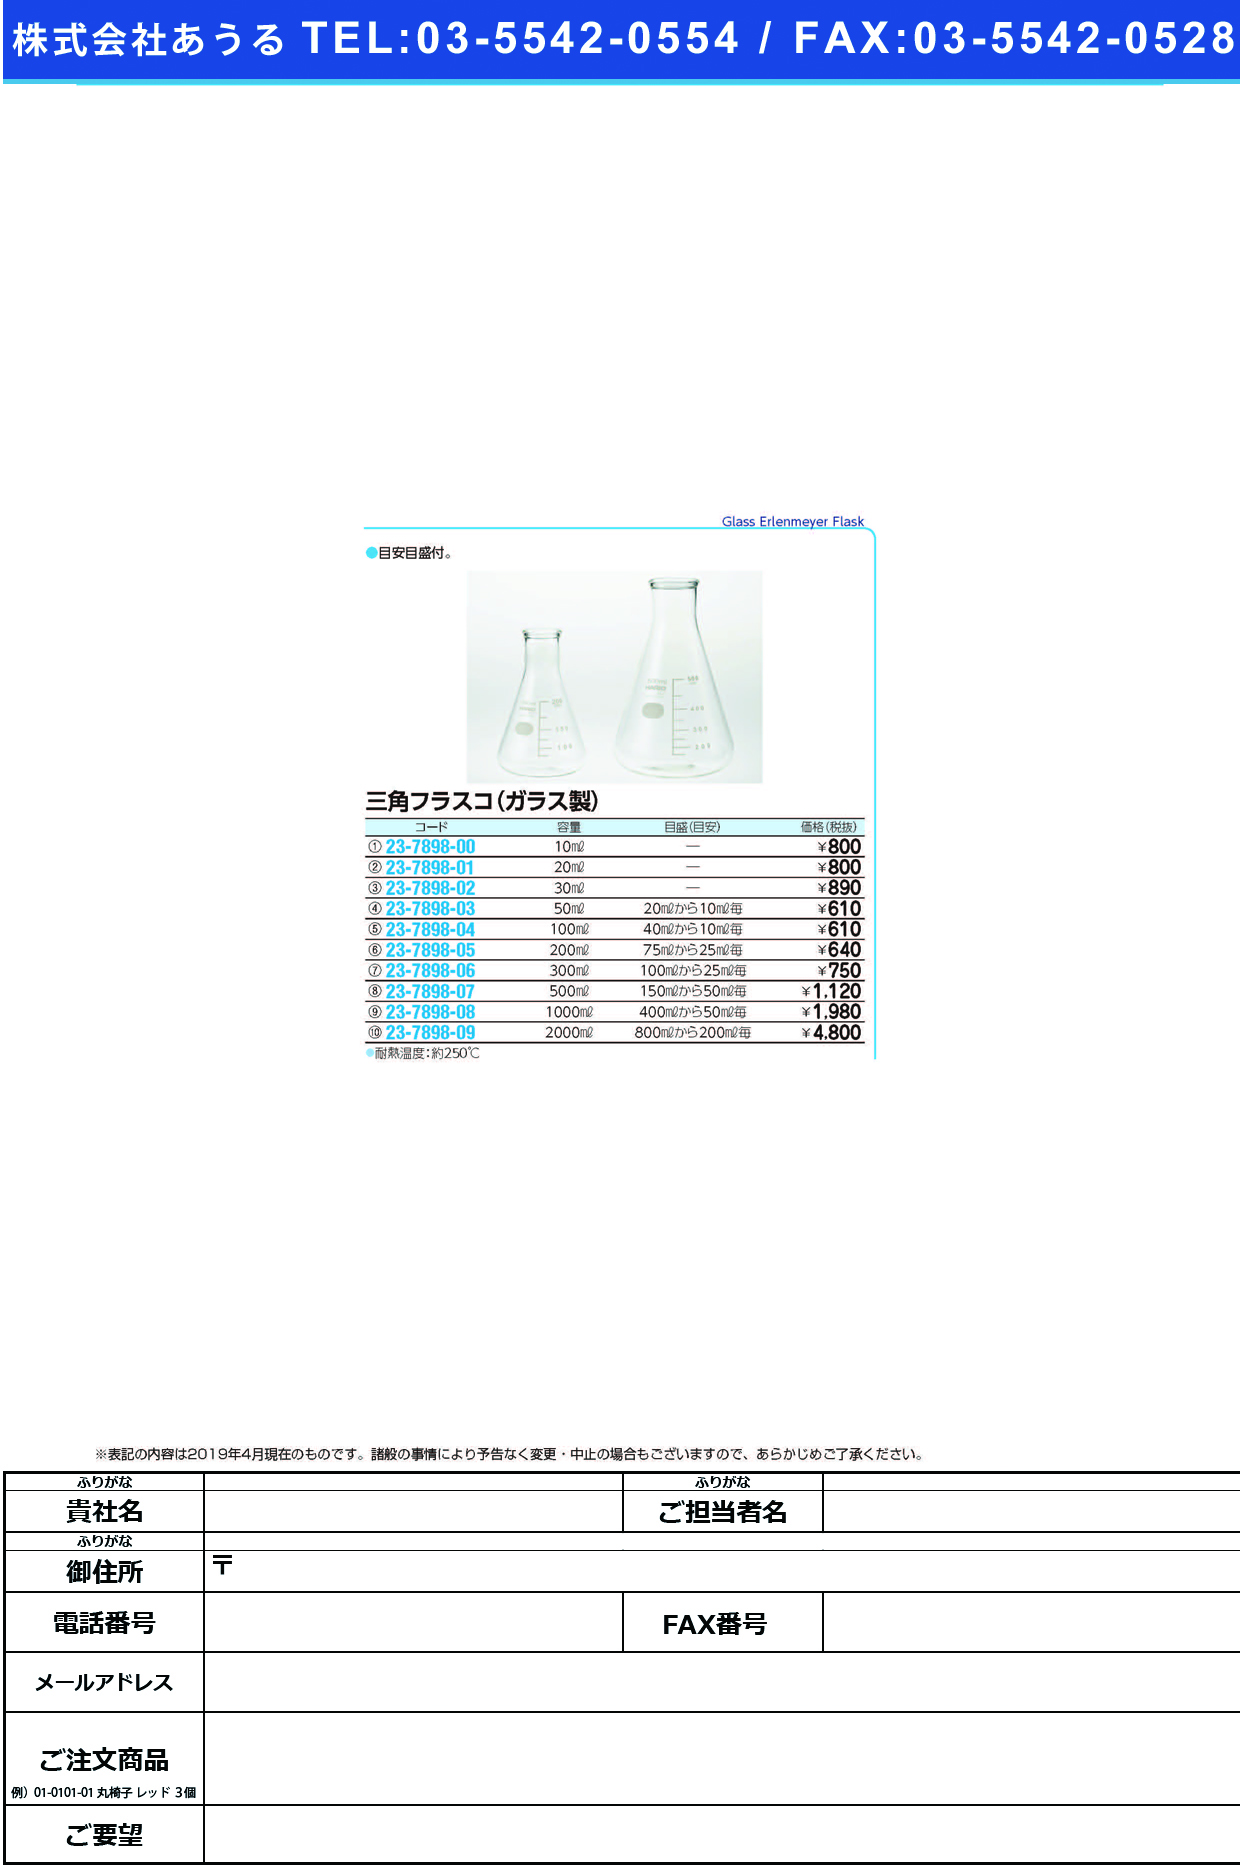 (23-7898-06)三角フラスコ（ガラス製） 300ML ｻﾝｶｸﾌﾗｽｺ(ｶﾞﾗｽｾｲ)【1個単位】【2019年カタログ商品】